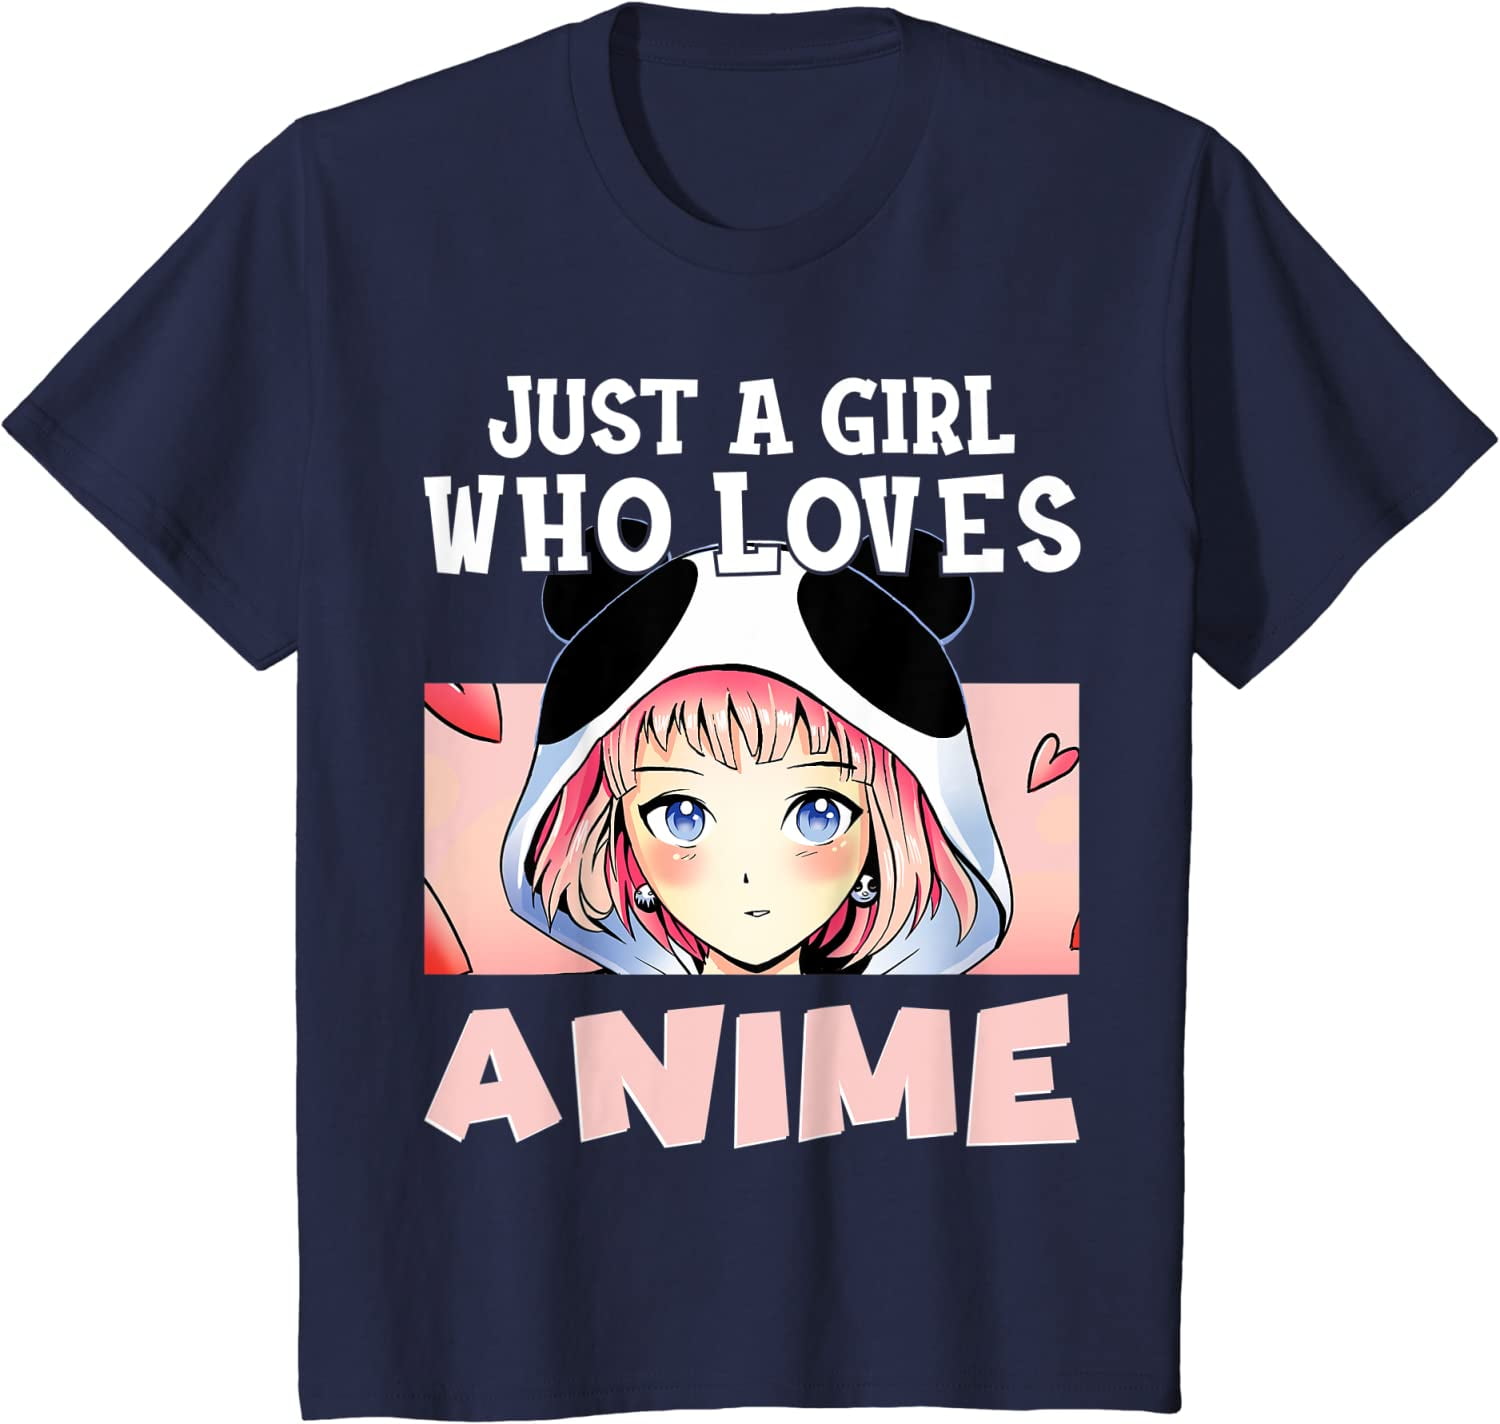 Flower Anime Girl T-shirt Design Vector Download